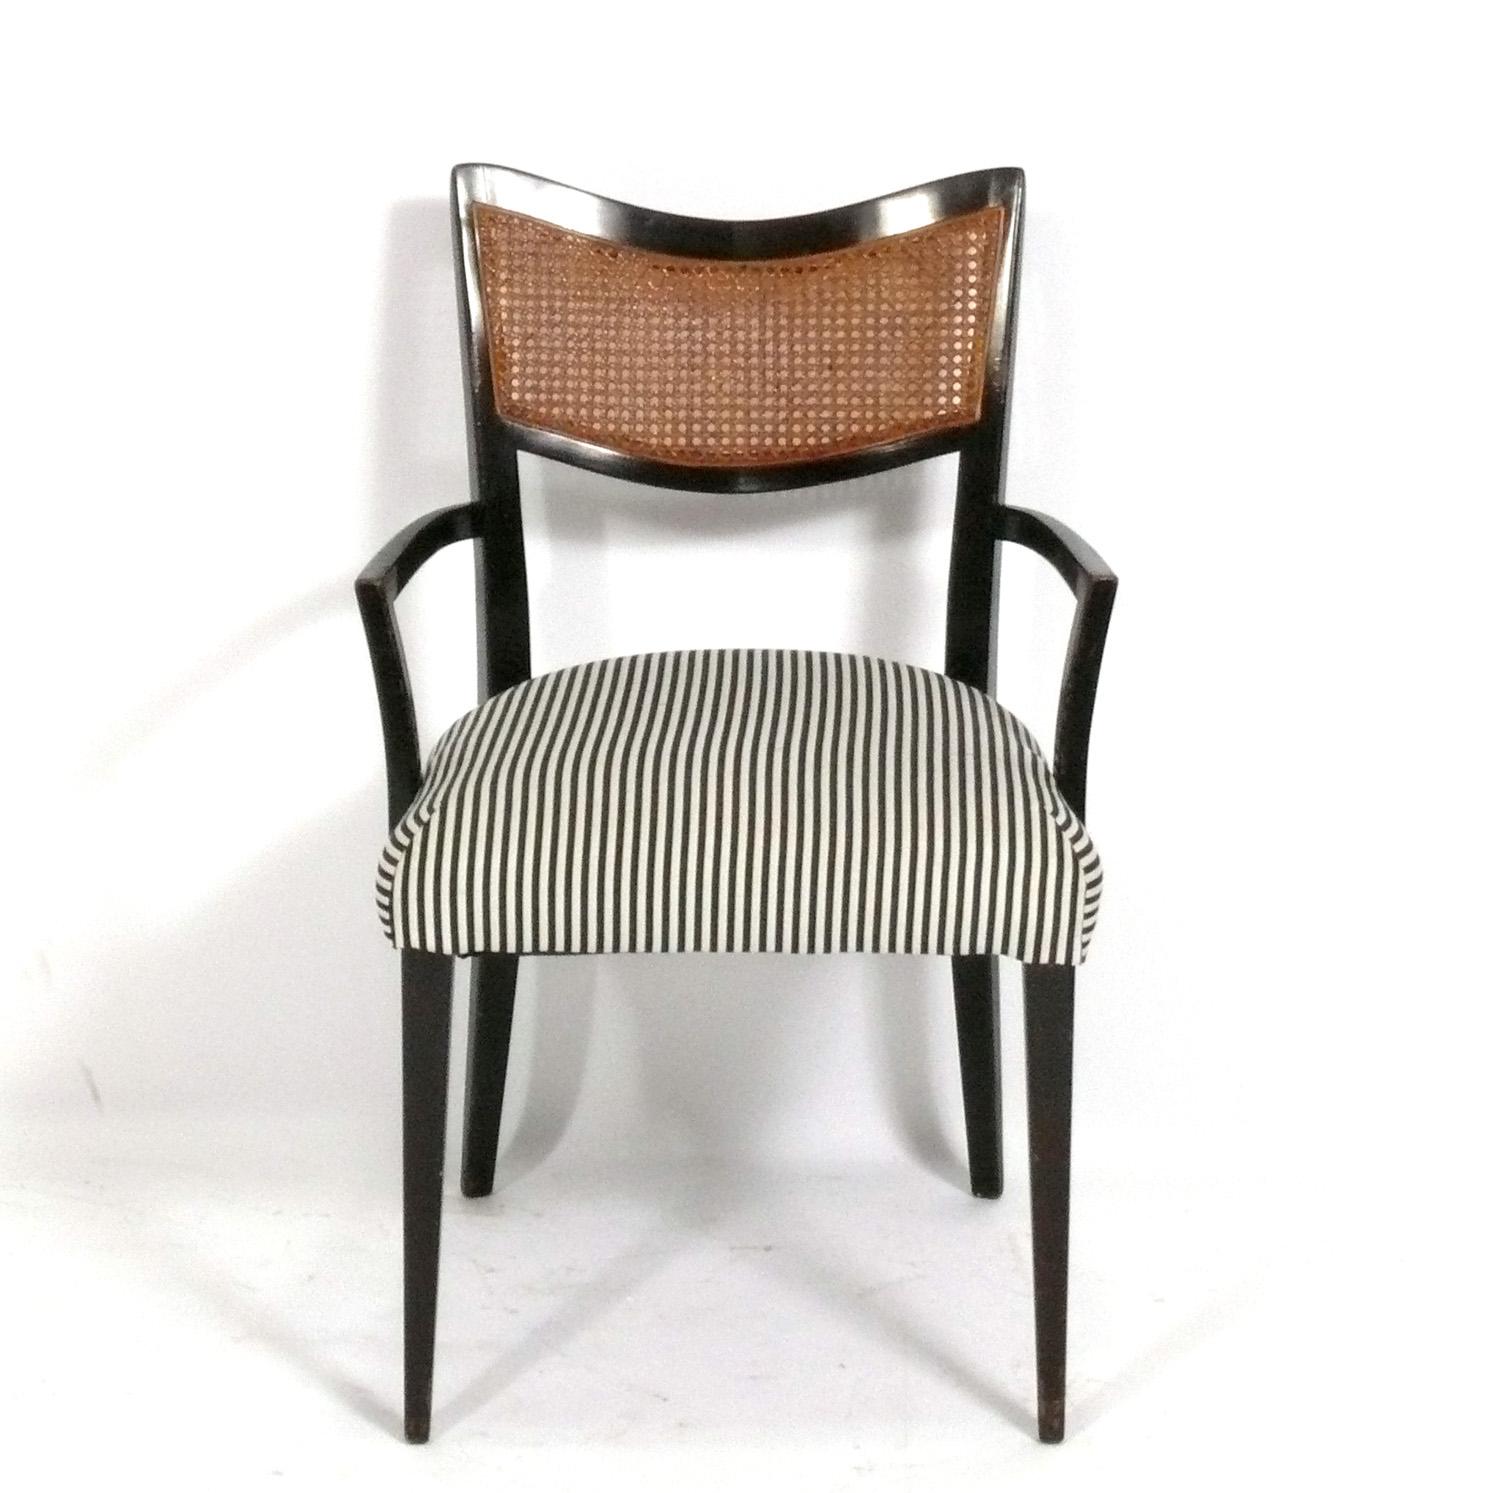 Satz von sechs geschwungenen Esszimmerstühlen, entworfen von Harvey Probber, Amerikaner, ca. 1960er Jahre. Diese Stühle werden derzeit restauriert und neu gepolstert. Sie können in der von Ihnen gewünschten Farbe und mit dem von Ihnen gewünschten